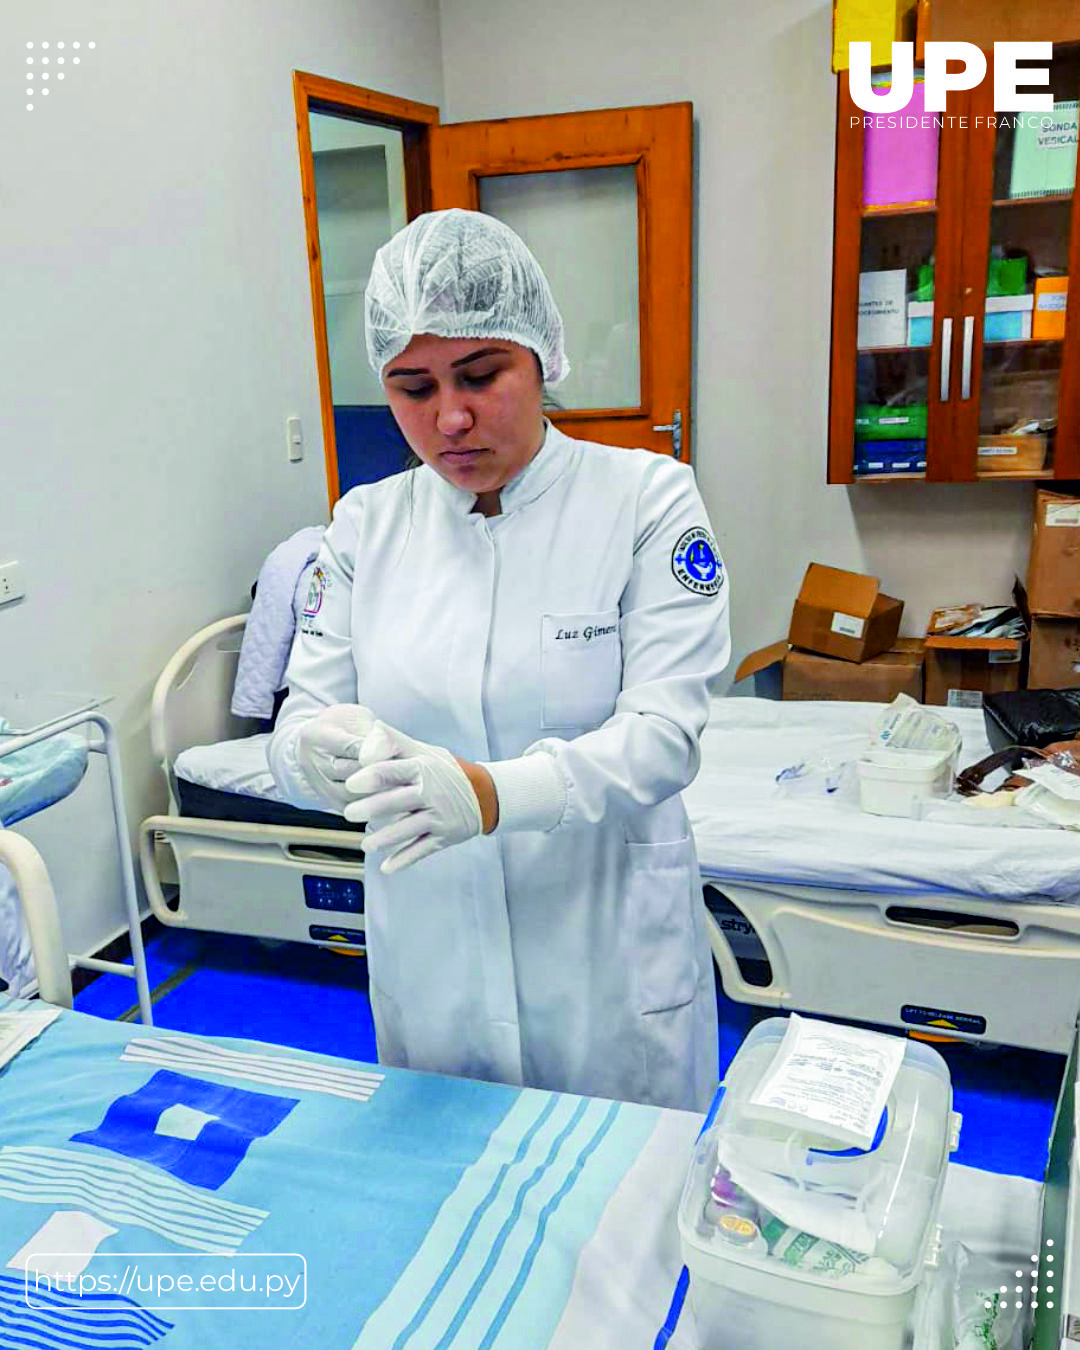 Formación Técnica en Enfermería: Calzado de Guantes Estériles y Administración de Medicamentos